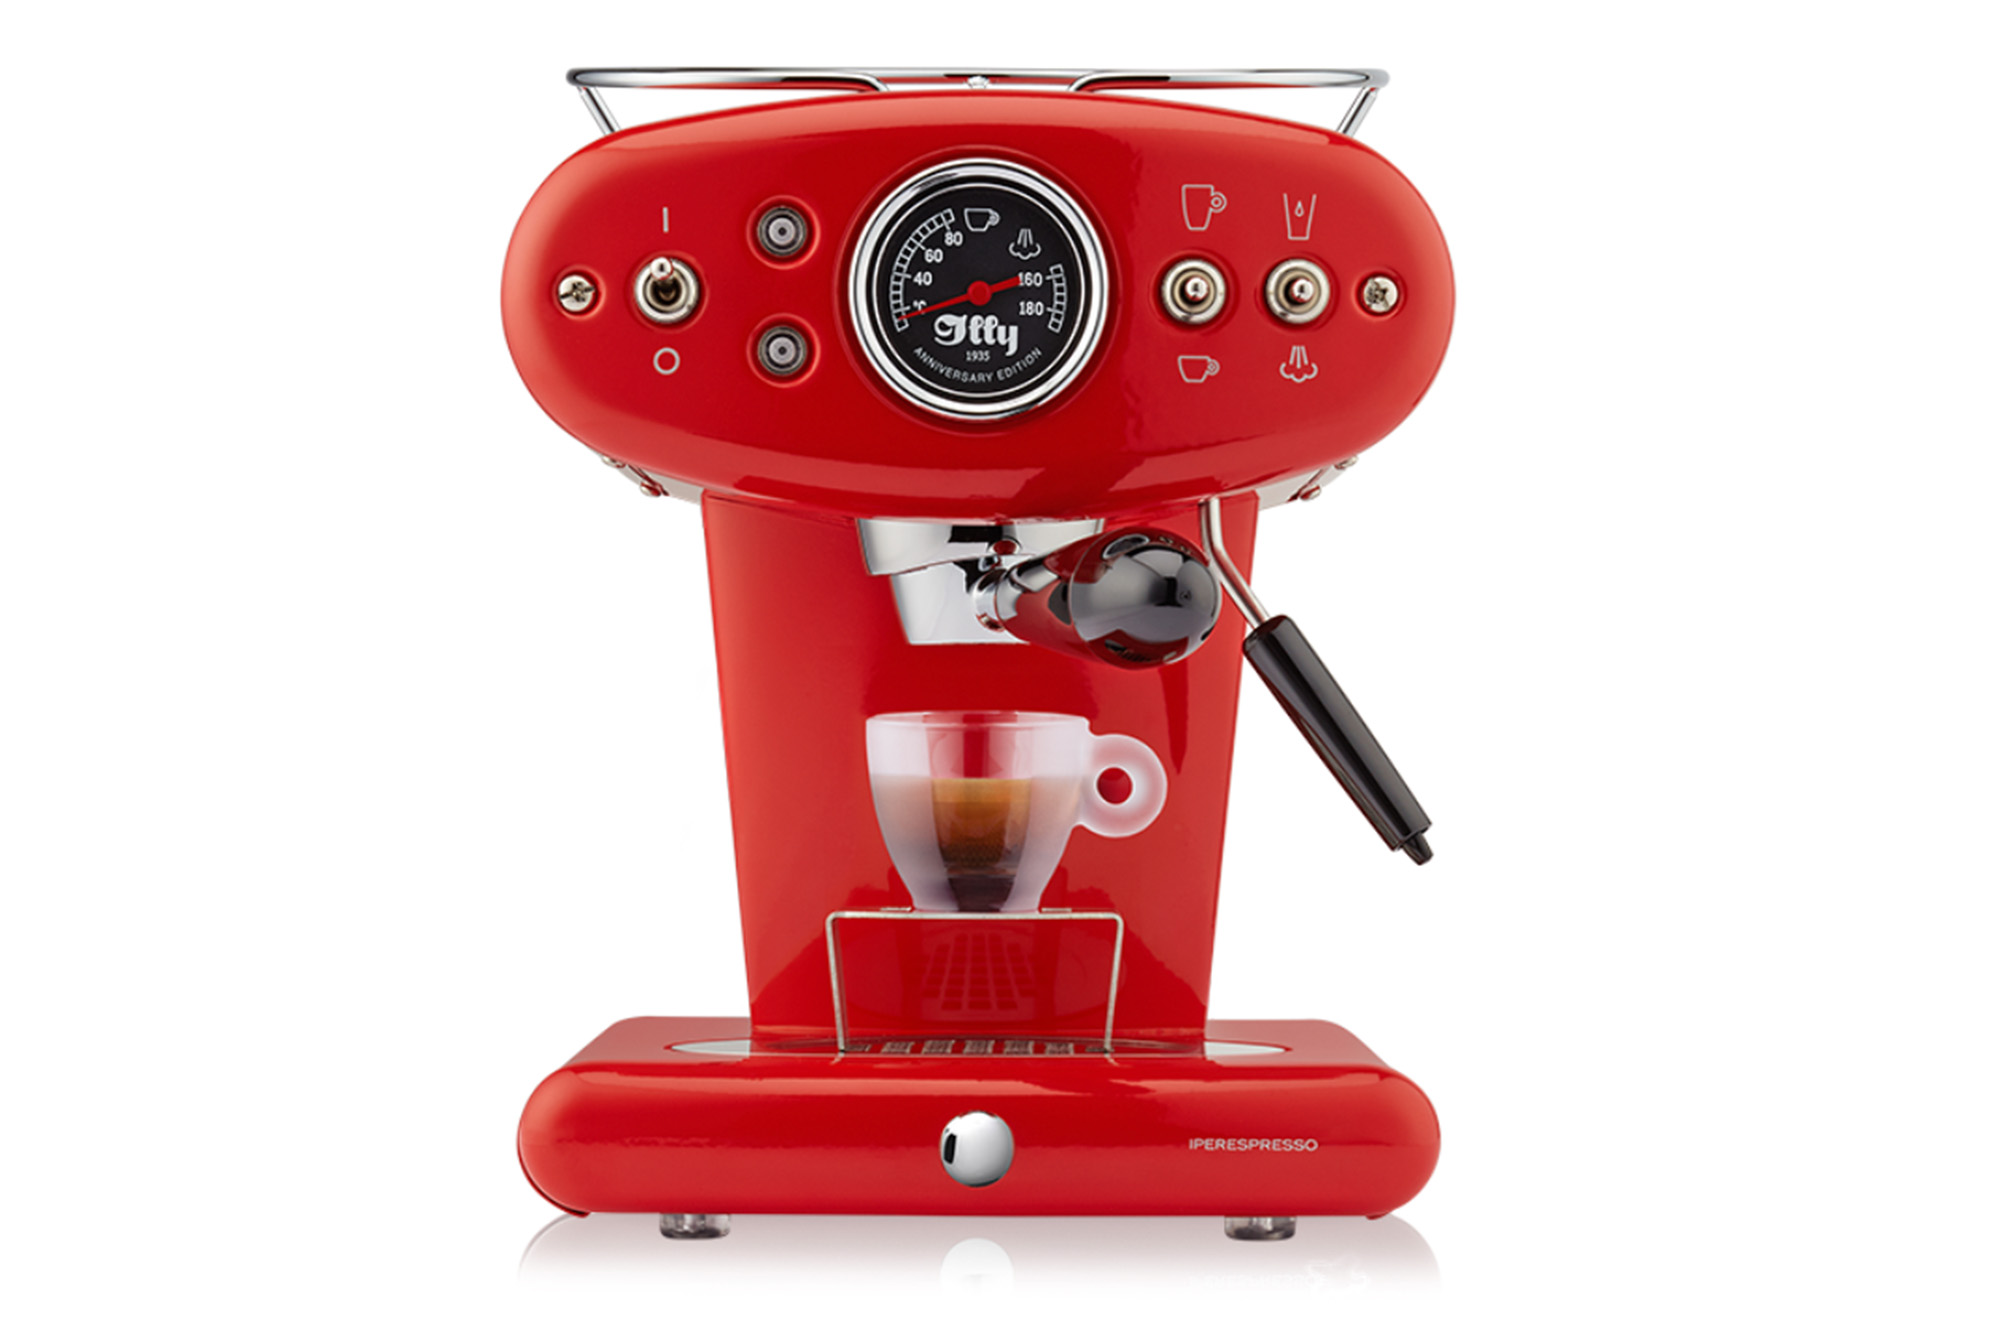 A red espresso machine